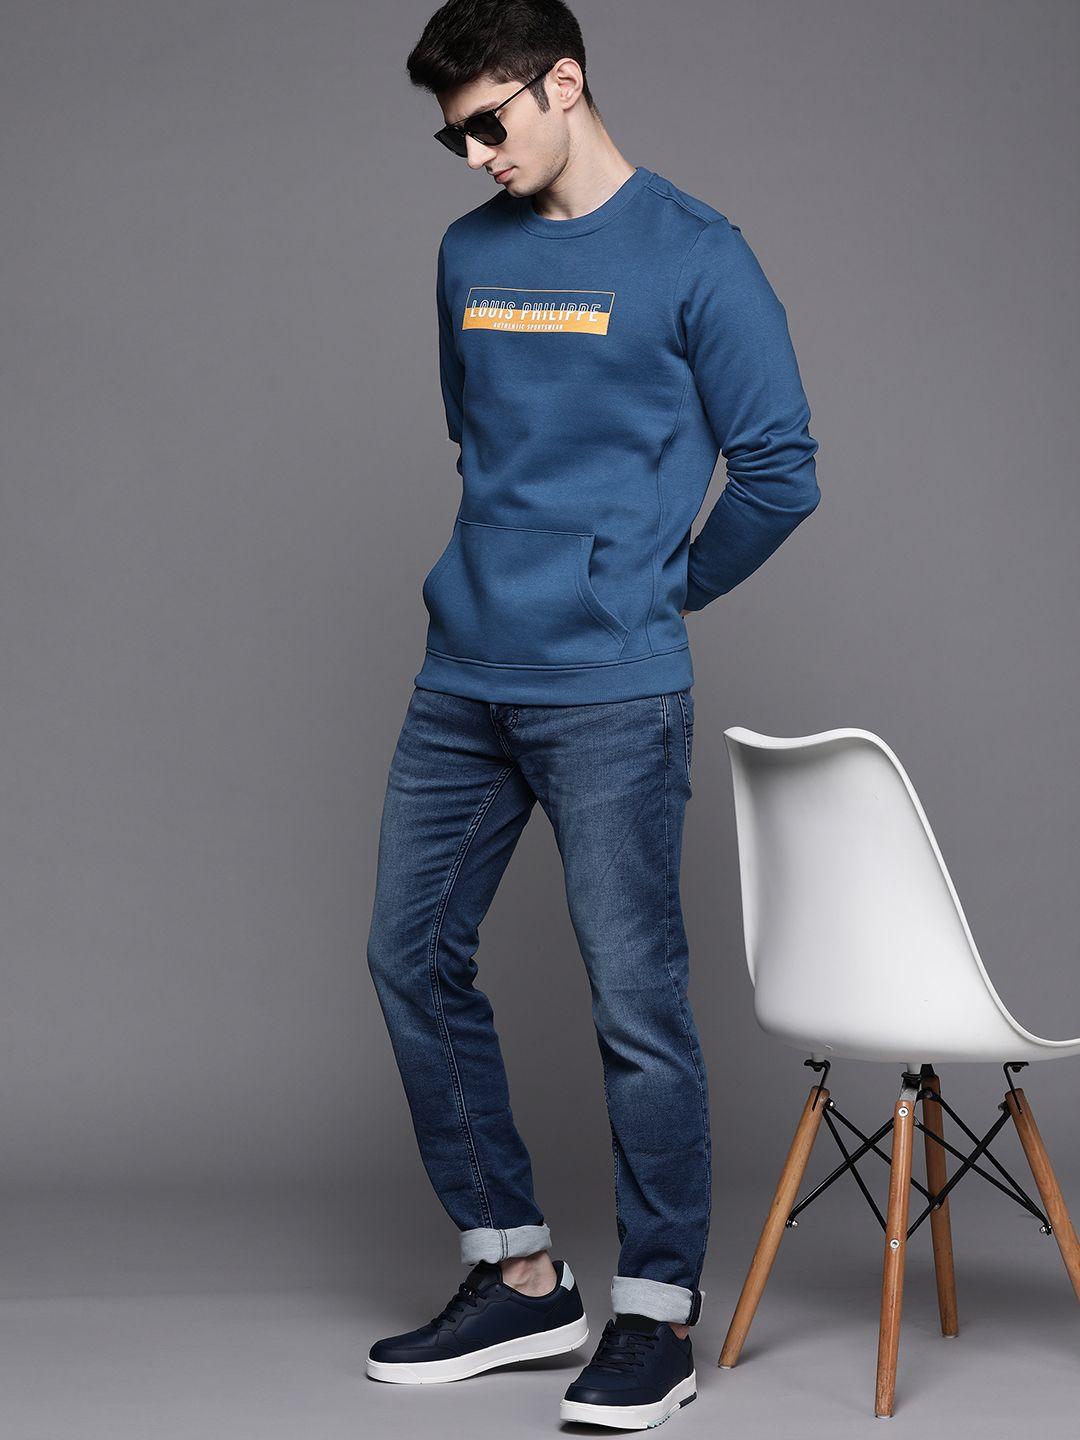 louis philippe sport men navy blue printed sweatshirt